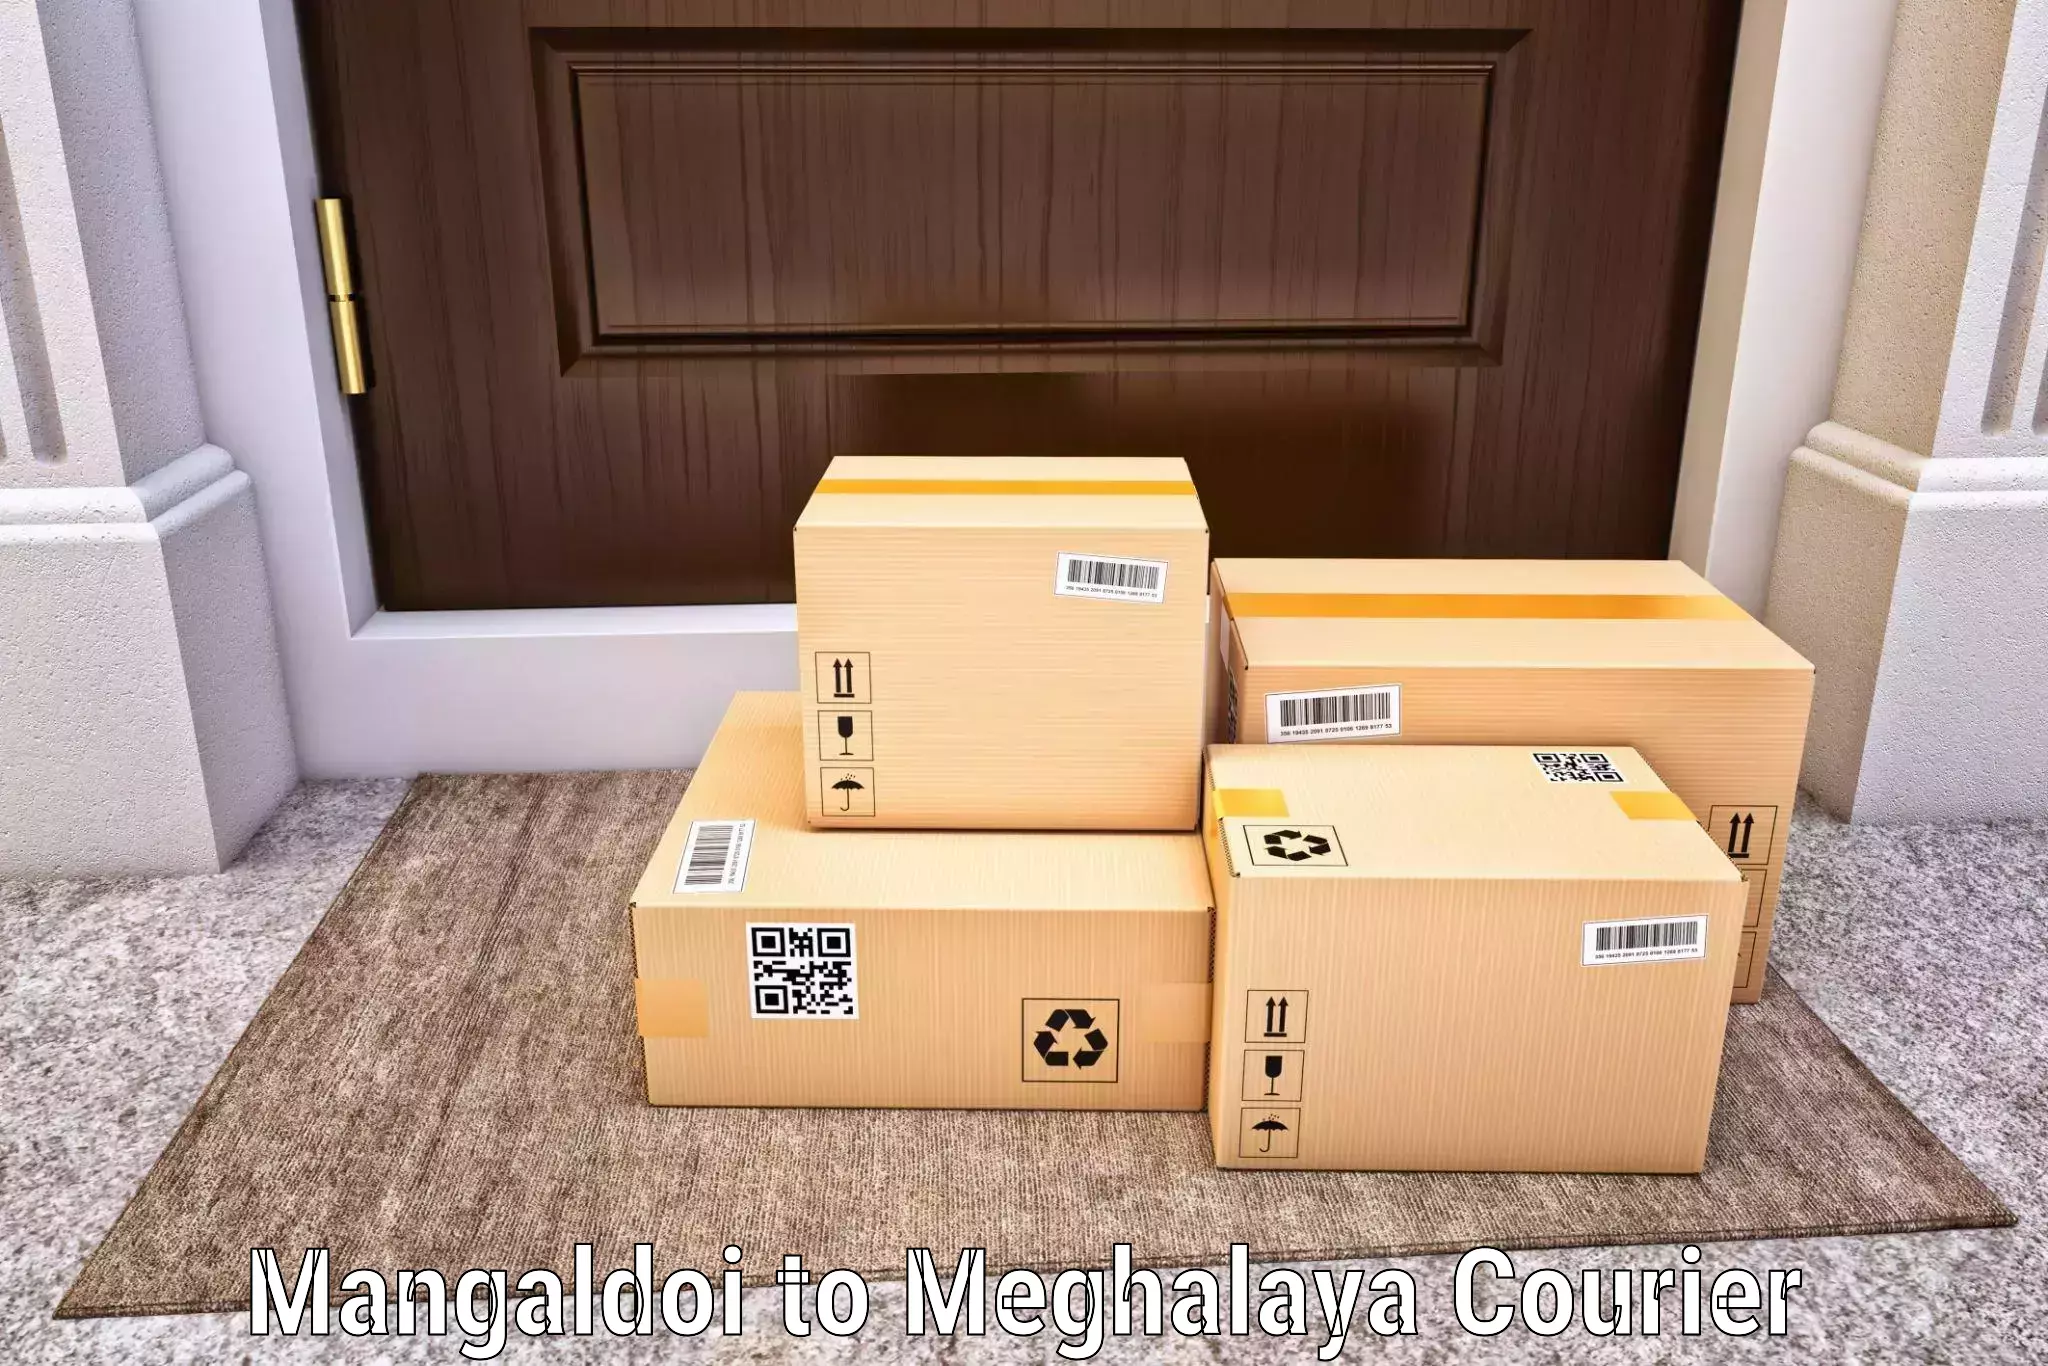 End-to-end delivery Mangaldoi to Tikrikilla